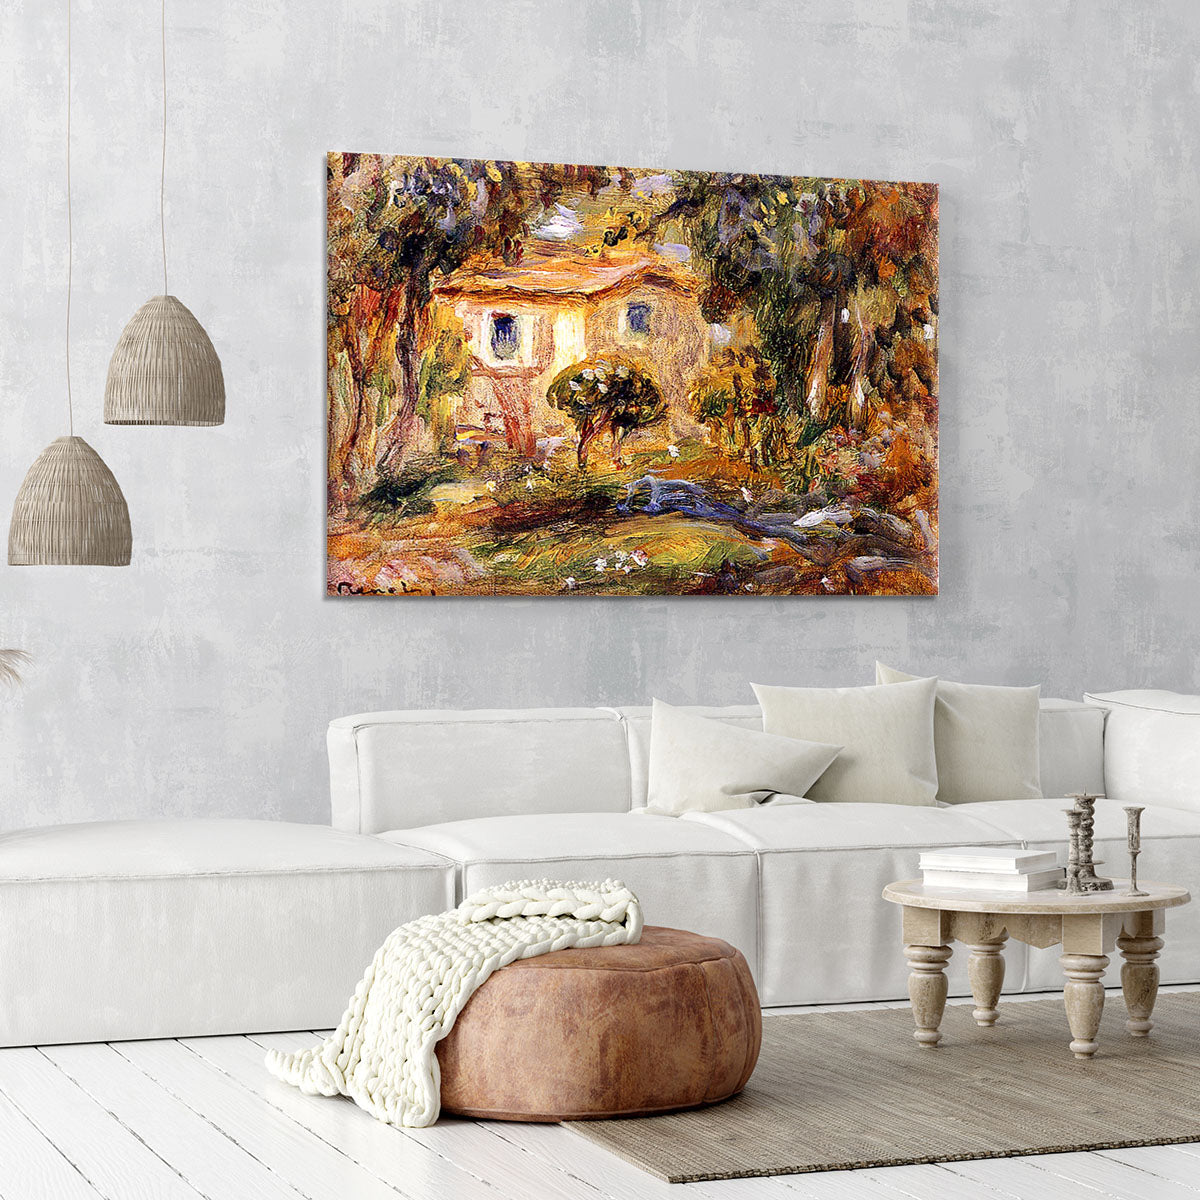 Landscape1 by Renoir Canvas Print or Poster - Canvas Art Rocks - 6